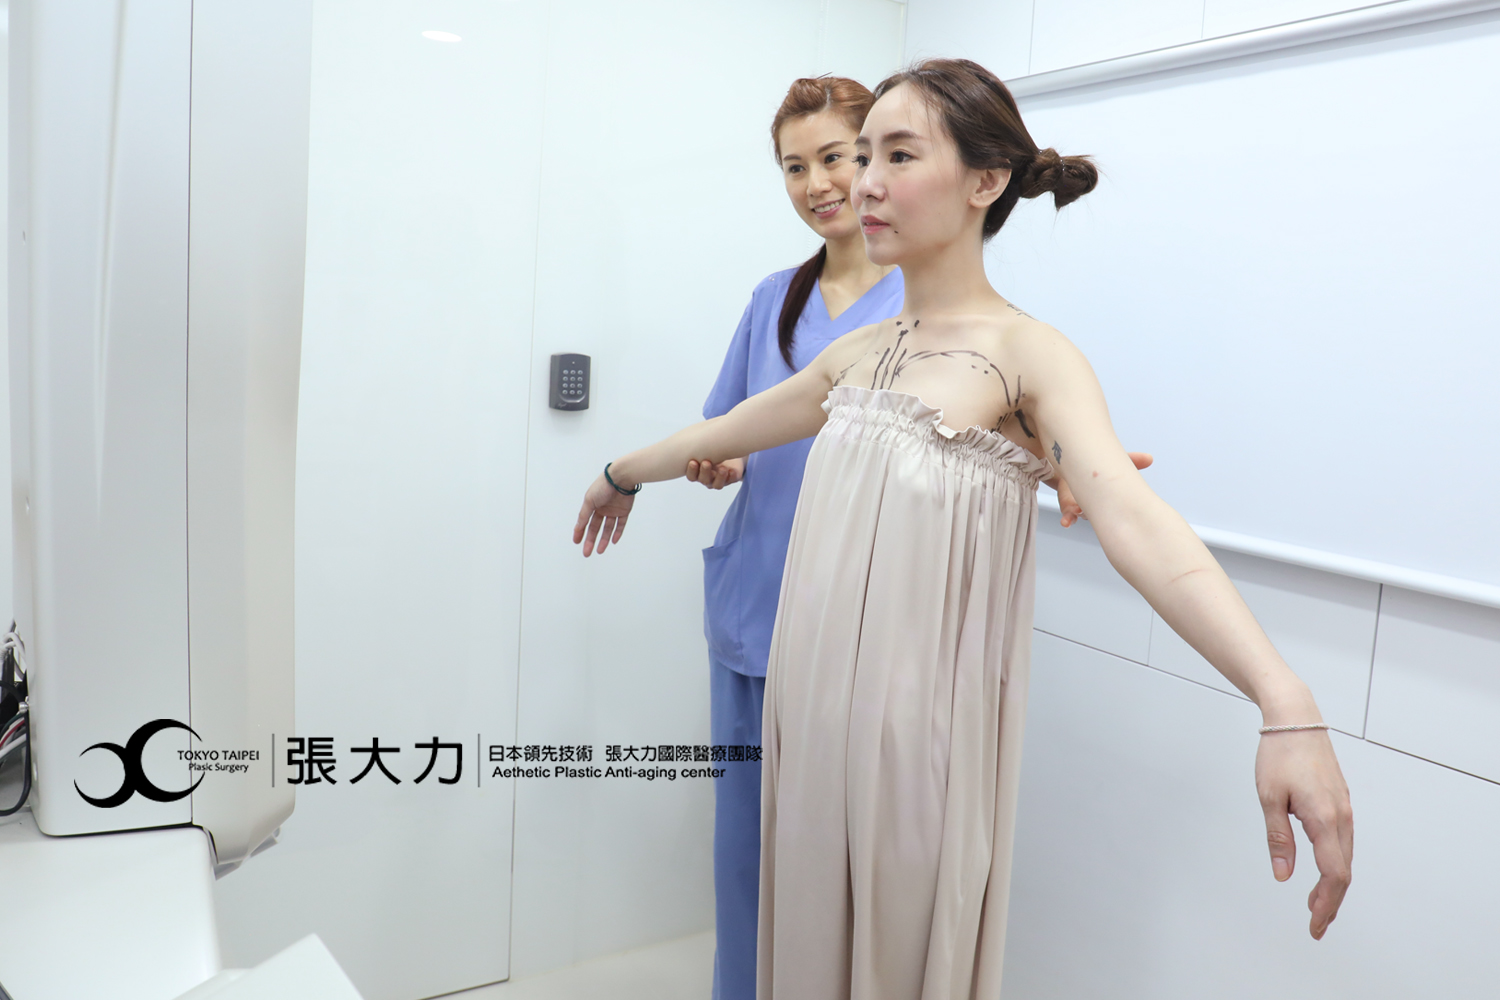 東京風采-張大力醫師-5D隆乳案例-3D影像模擬